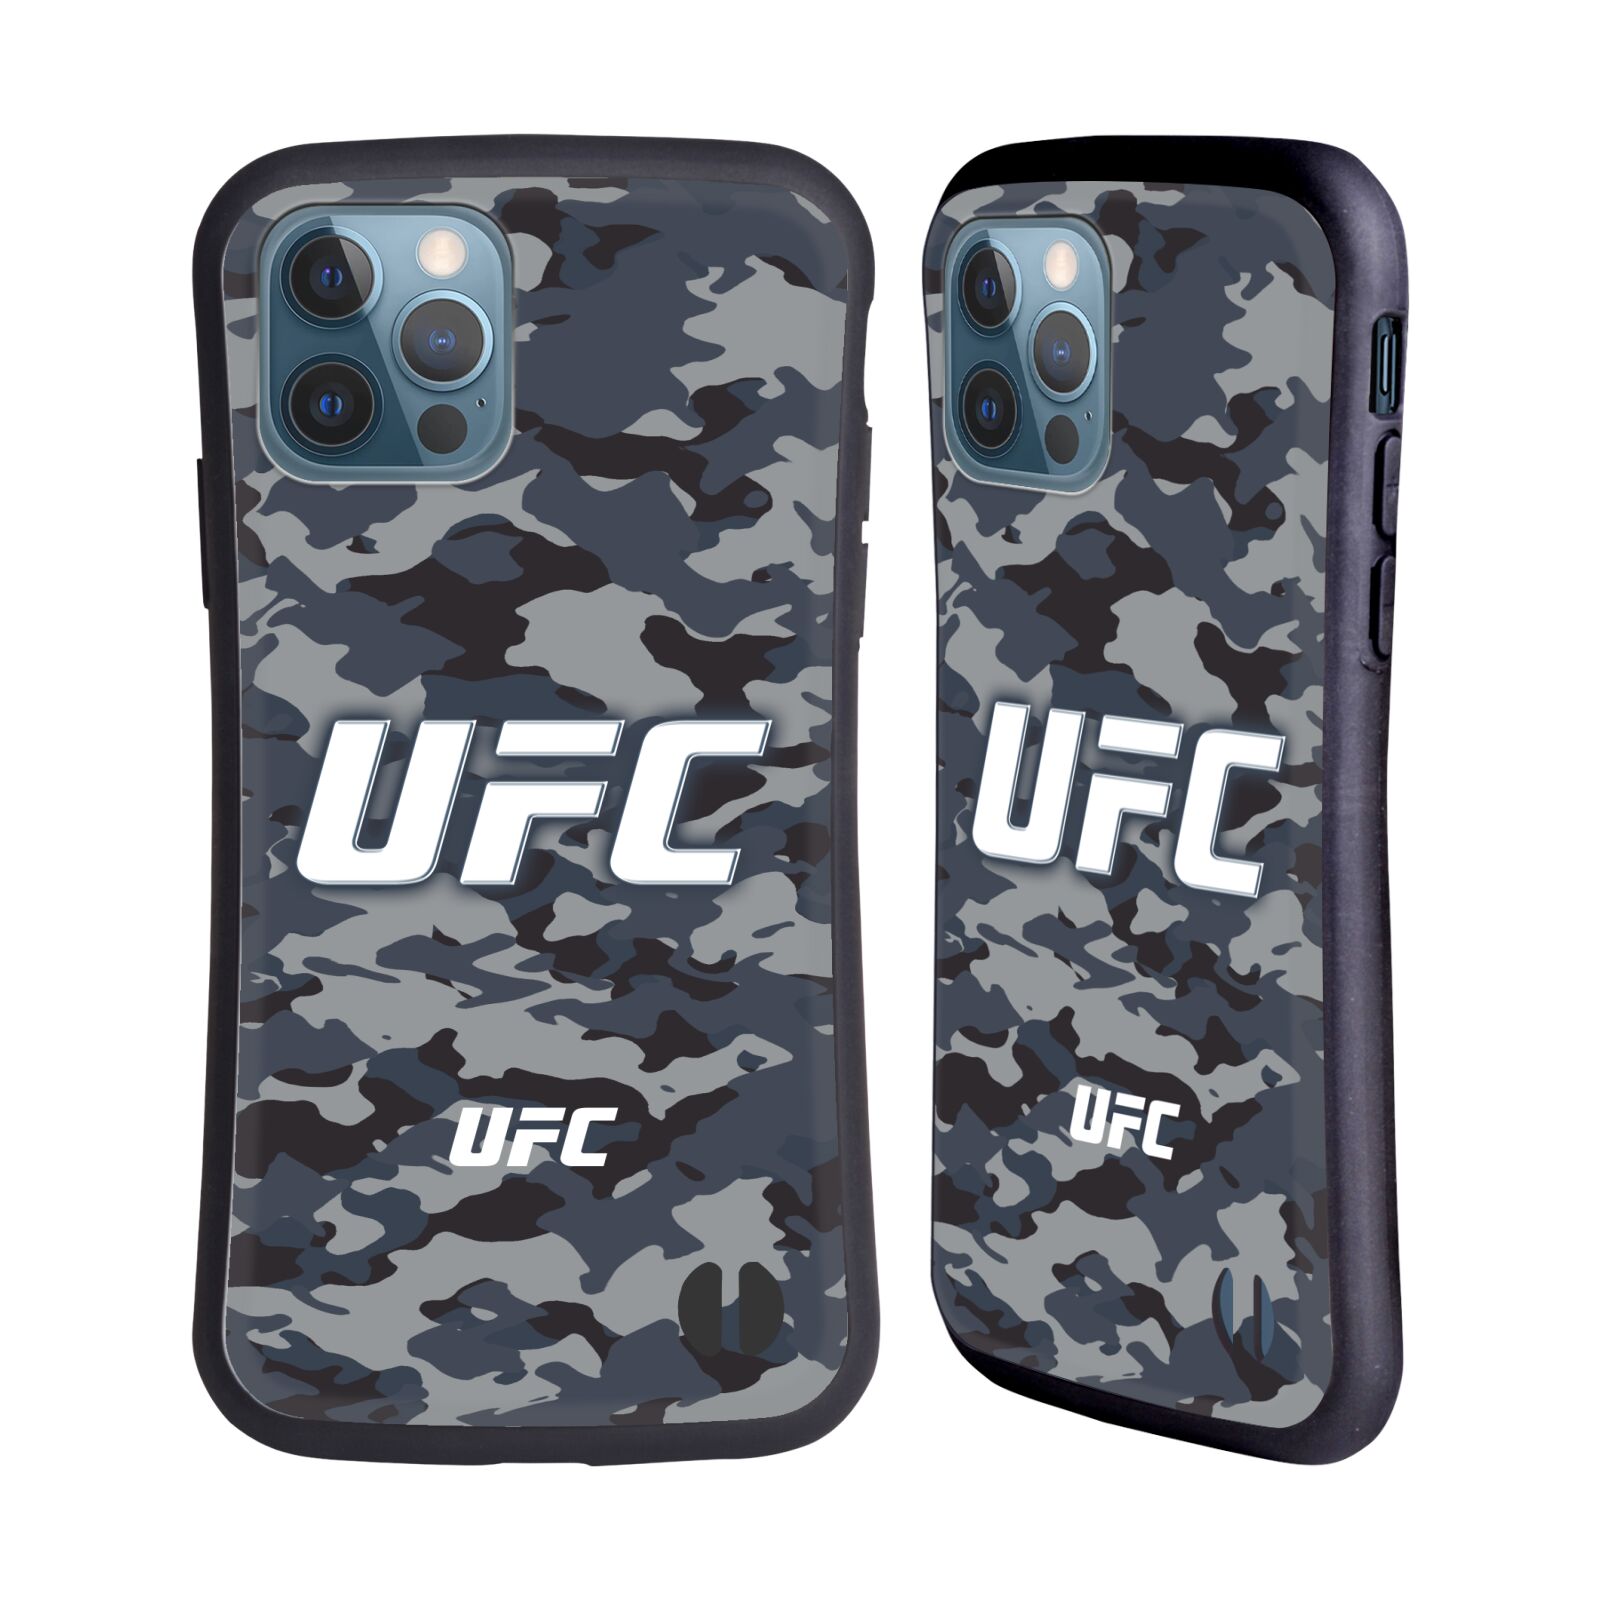 Odolný zadní obal pro mobil Apple iPhone 12 / iPhone 12 Pro - HEAD CASE - UFC - kamufláž